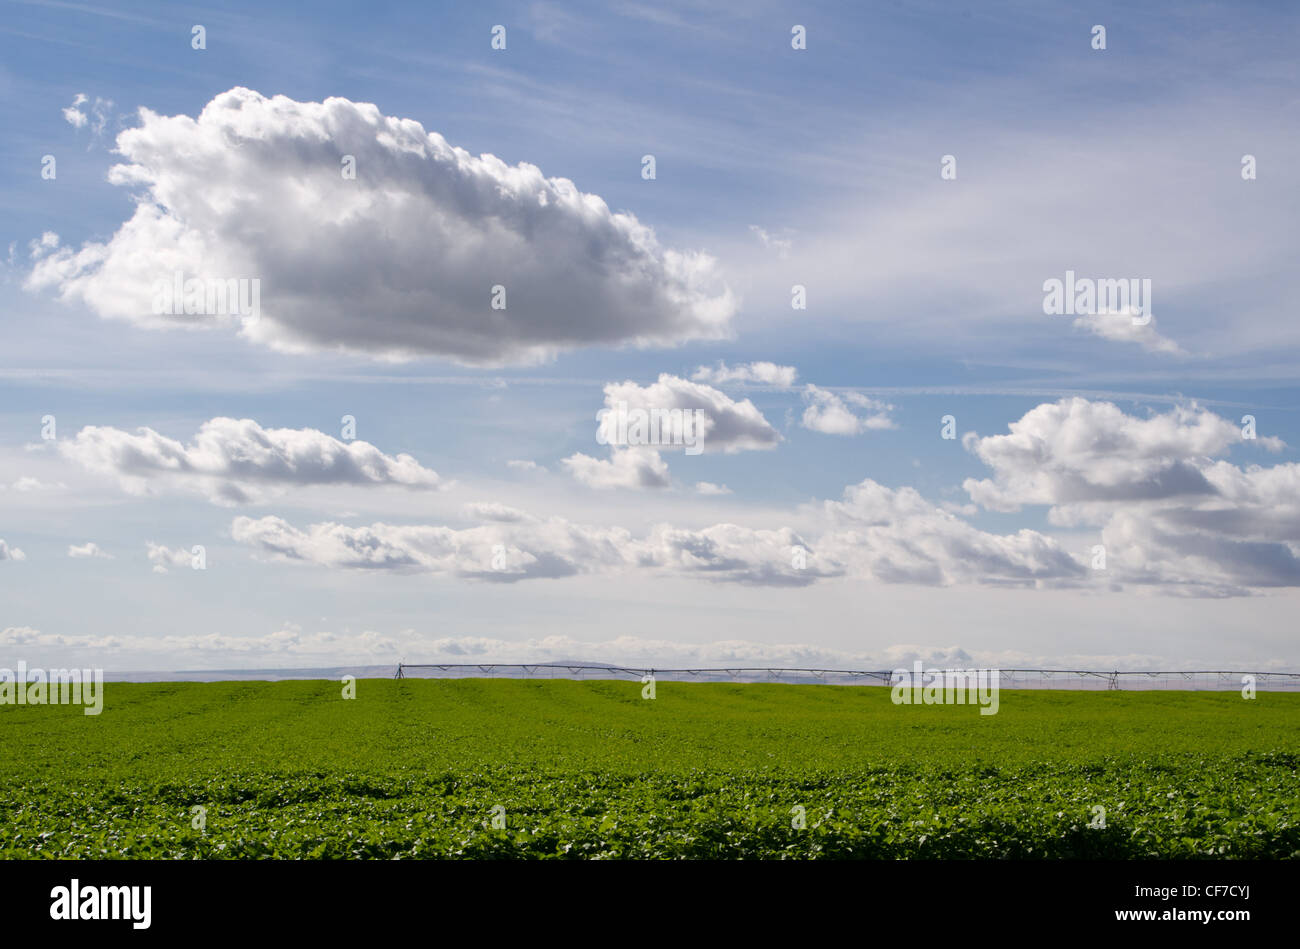 Un champ de pommes de terre est irriguée étant sous un ciel avec des nuages blancs Banque D'Images